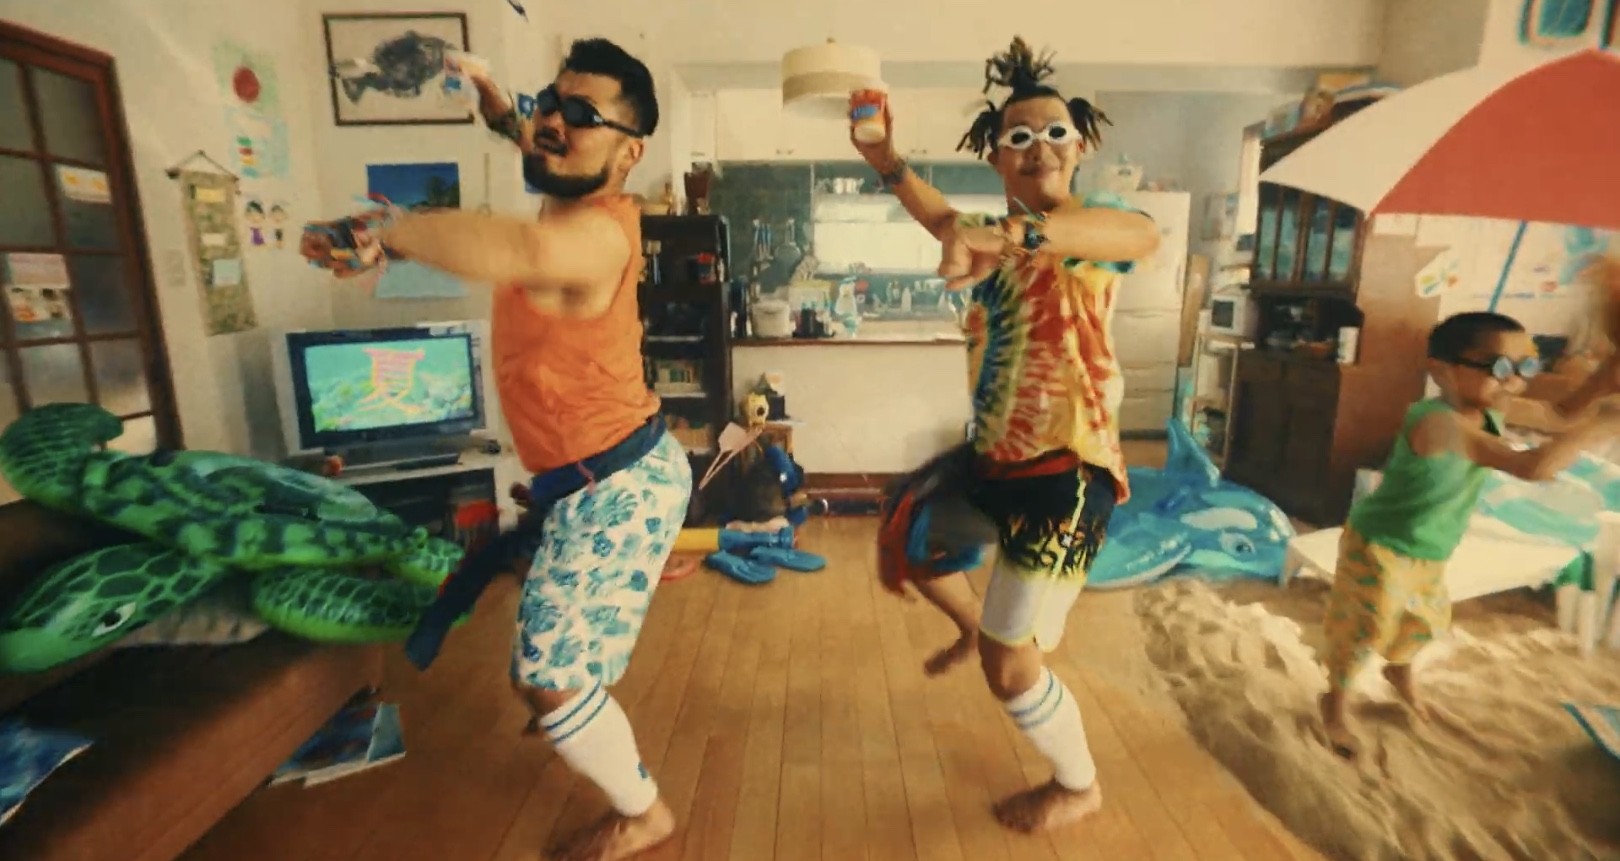 カップヌードルcmで歌って踊る男性2人組は五十嵐結也 佐藤新太 家の中で 夏 を満喫